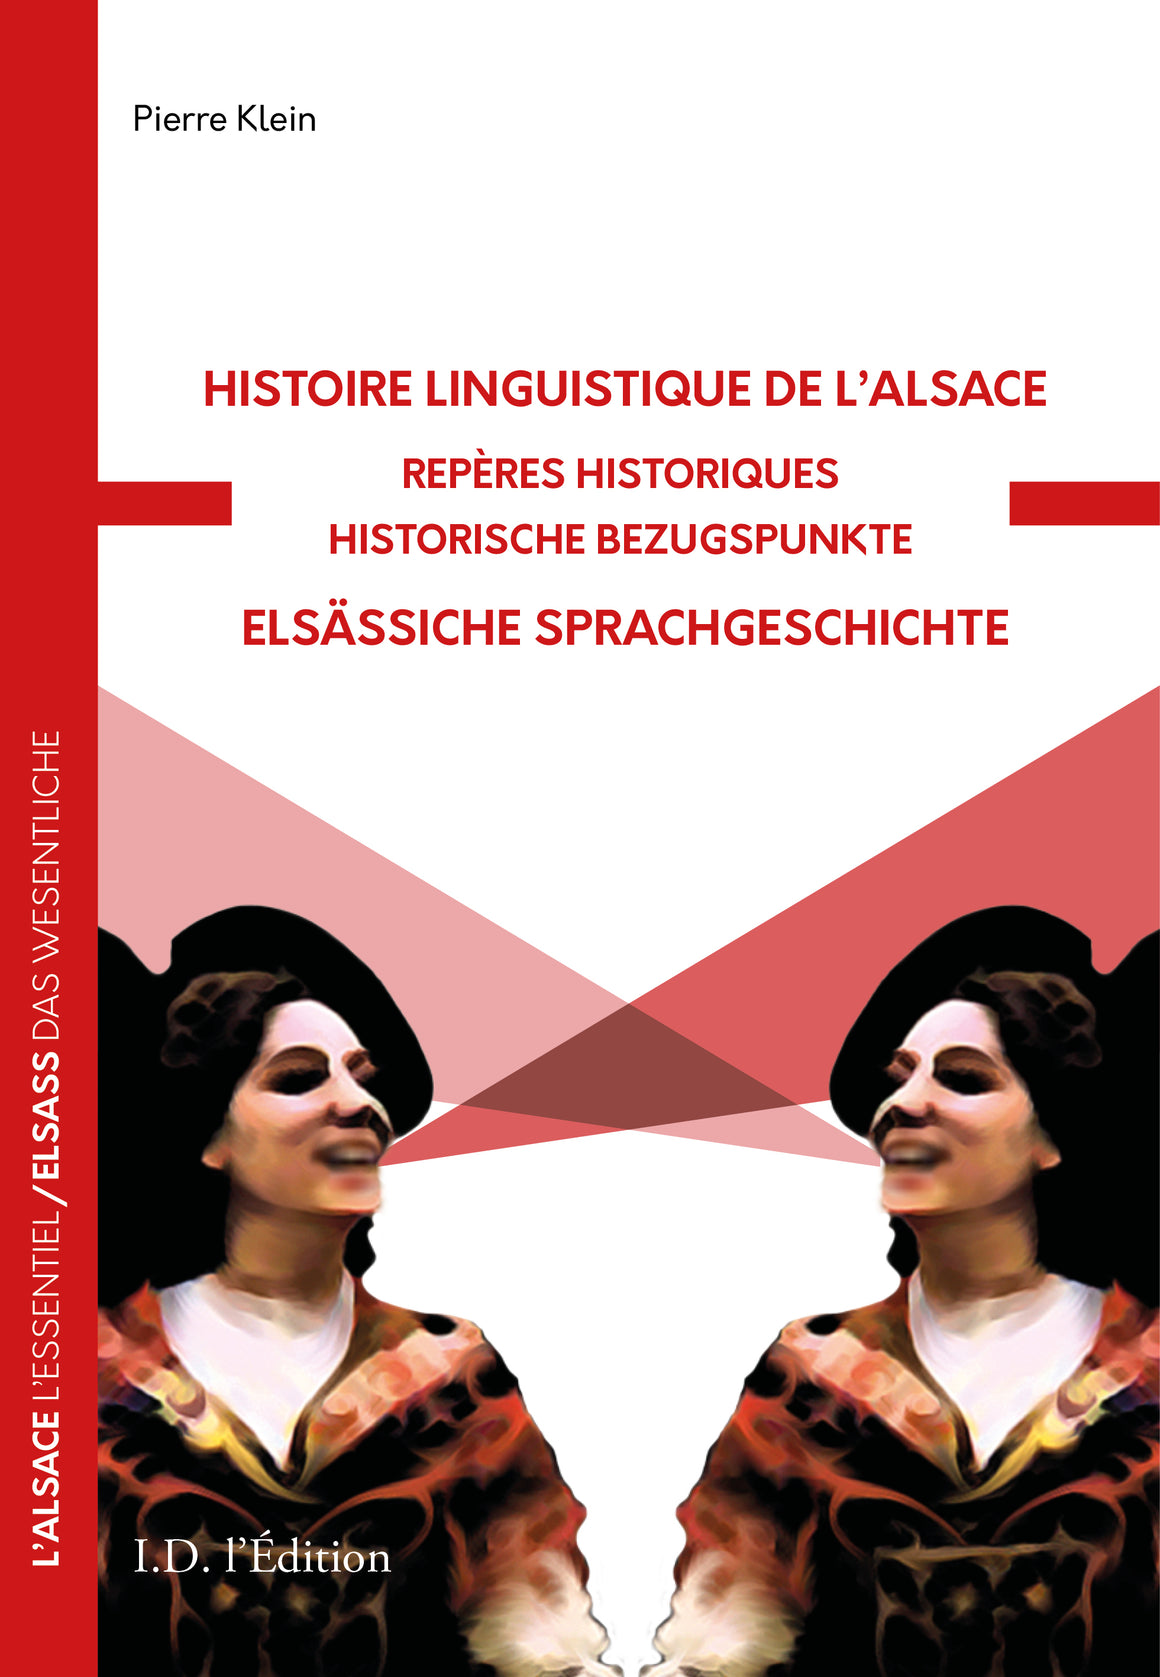 Histoire linguistique de l'Alsace, repères historiques